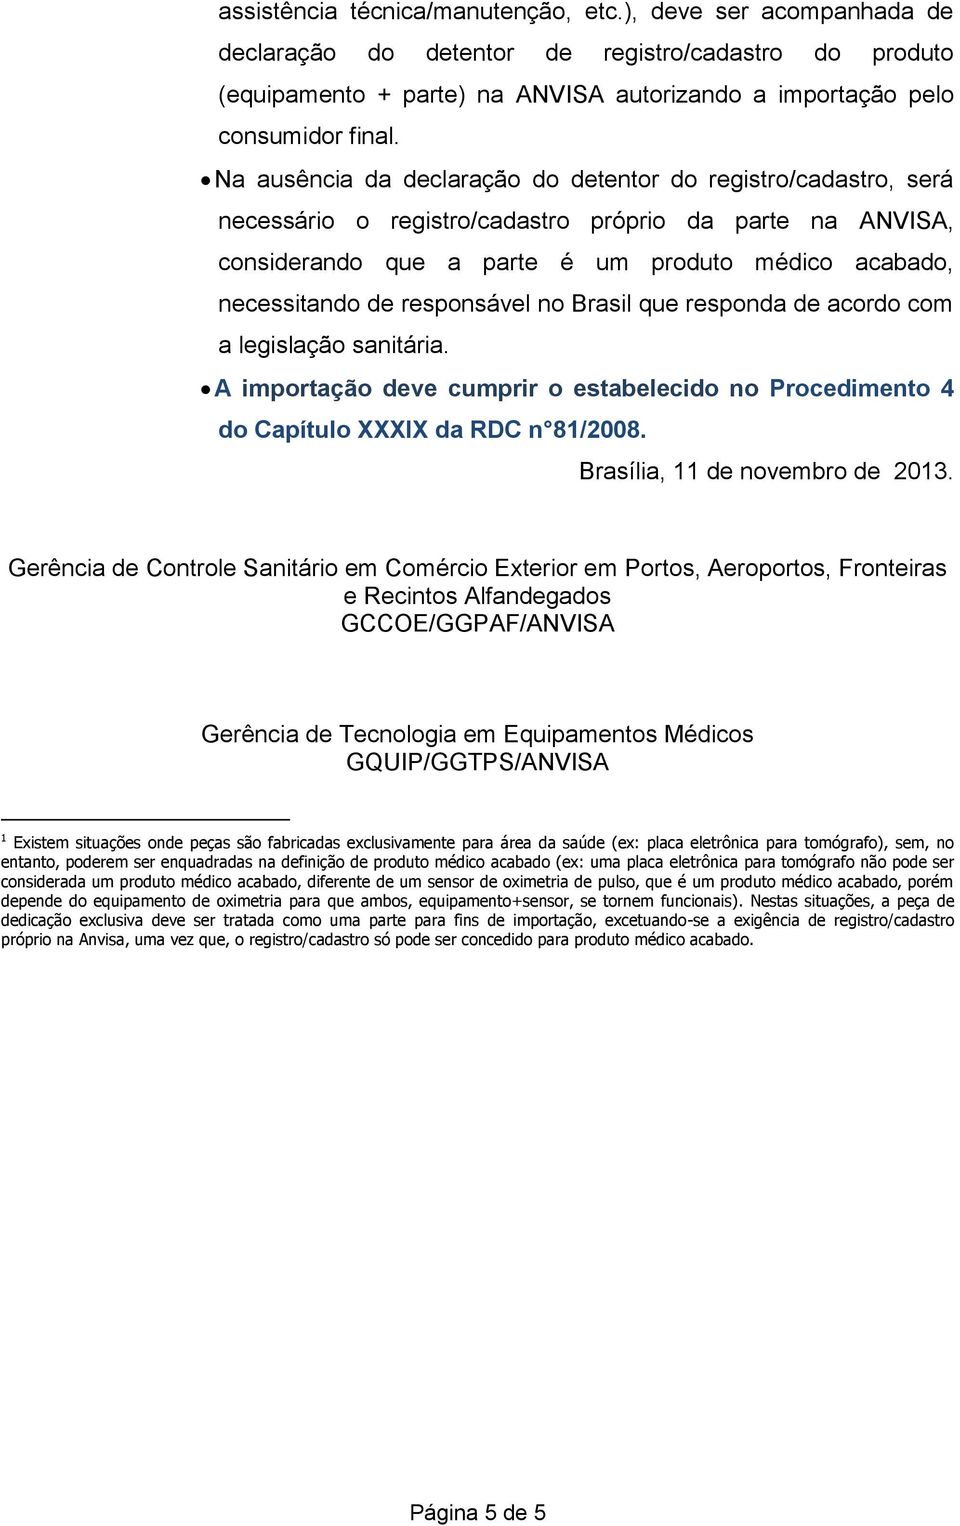 responsável no Brasil que responda de acordo com a legislação sanitária. Brasília, 11 de novembro de 2013.